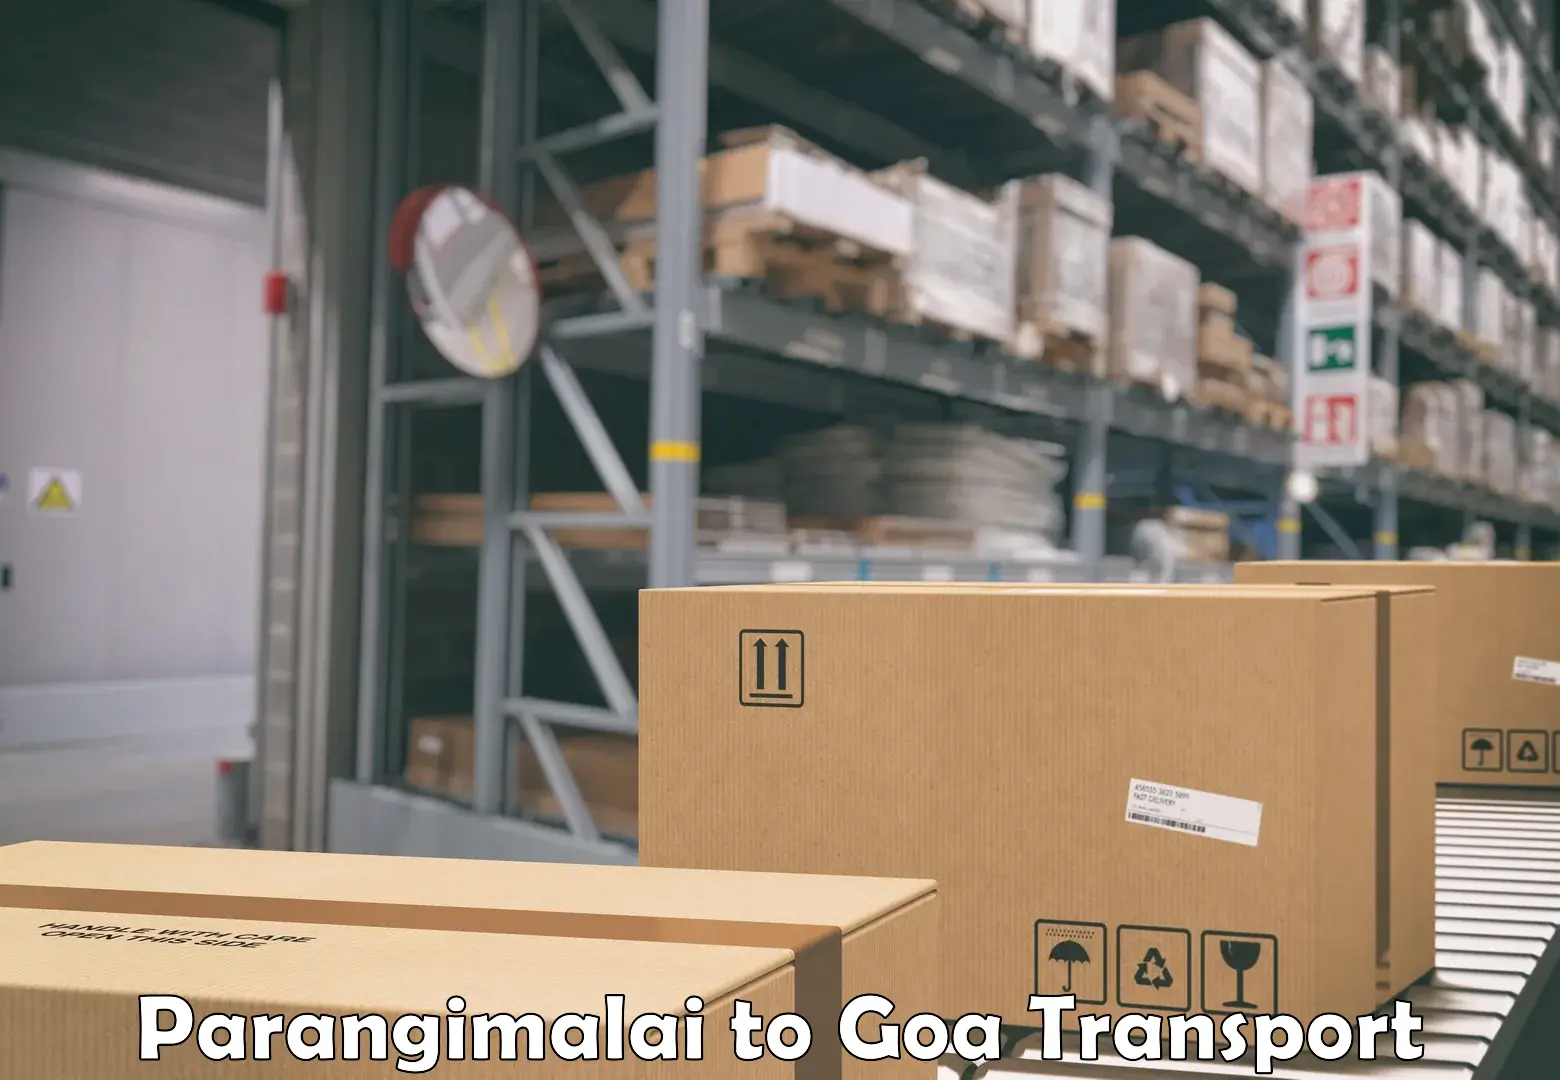 Scooty transport charges Parangimalai to Goa University